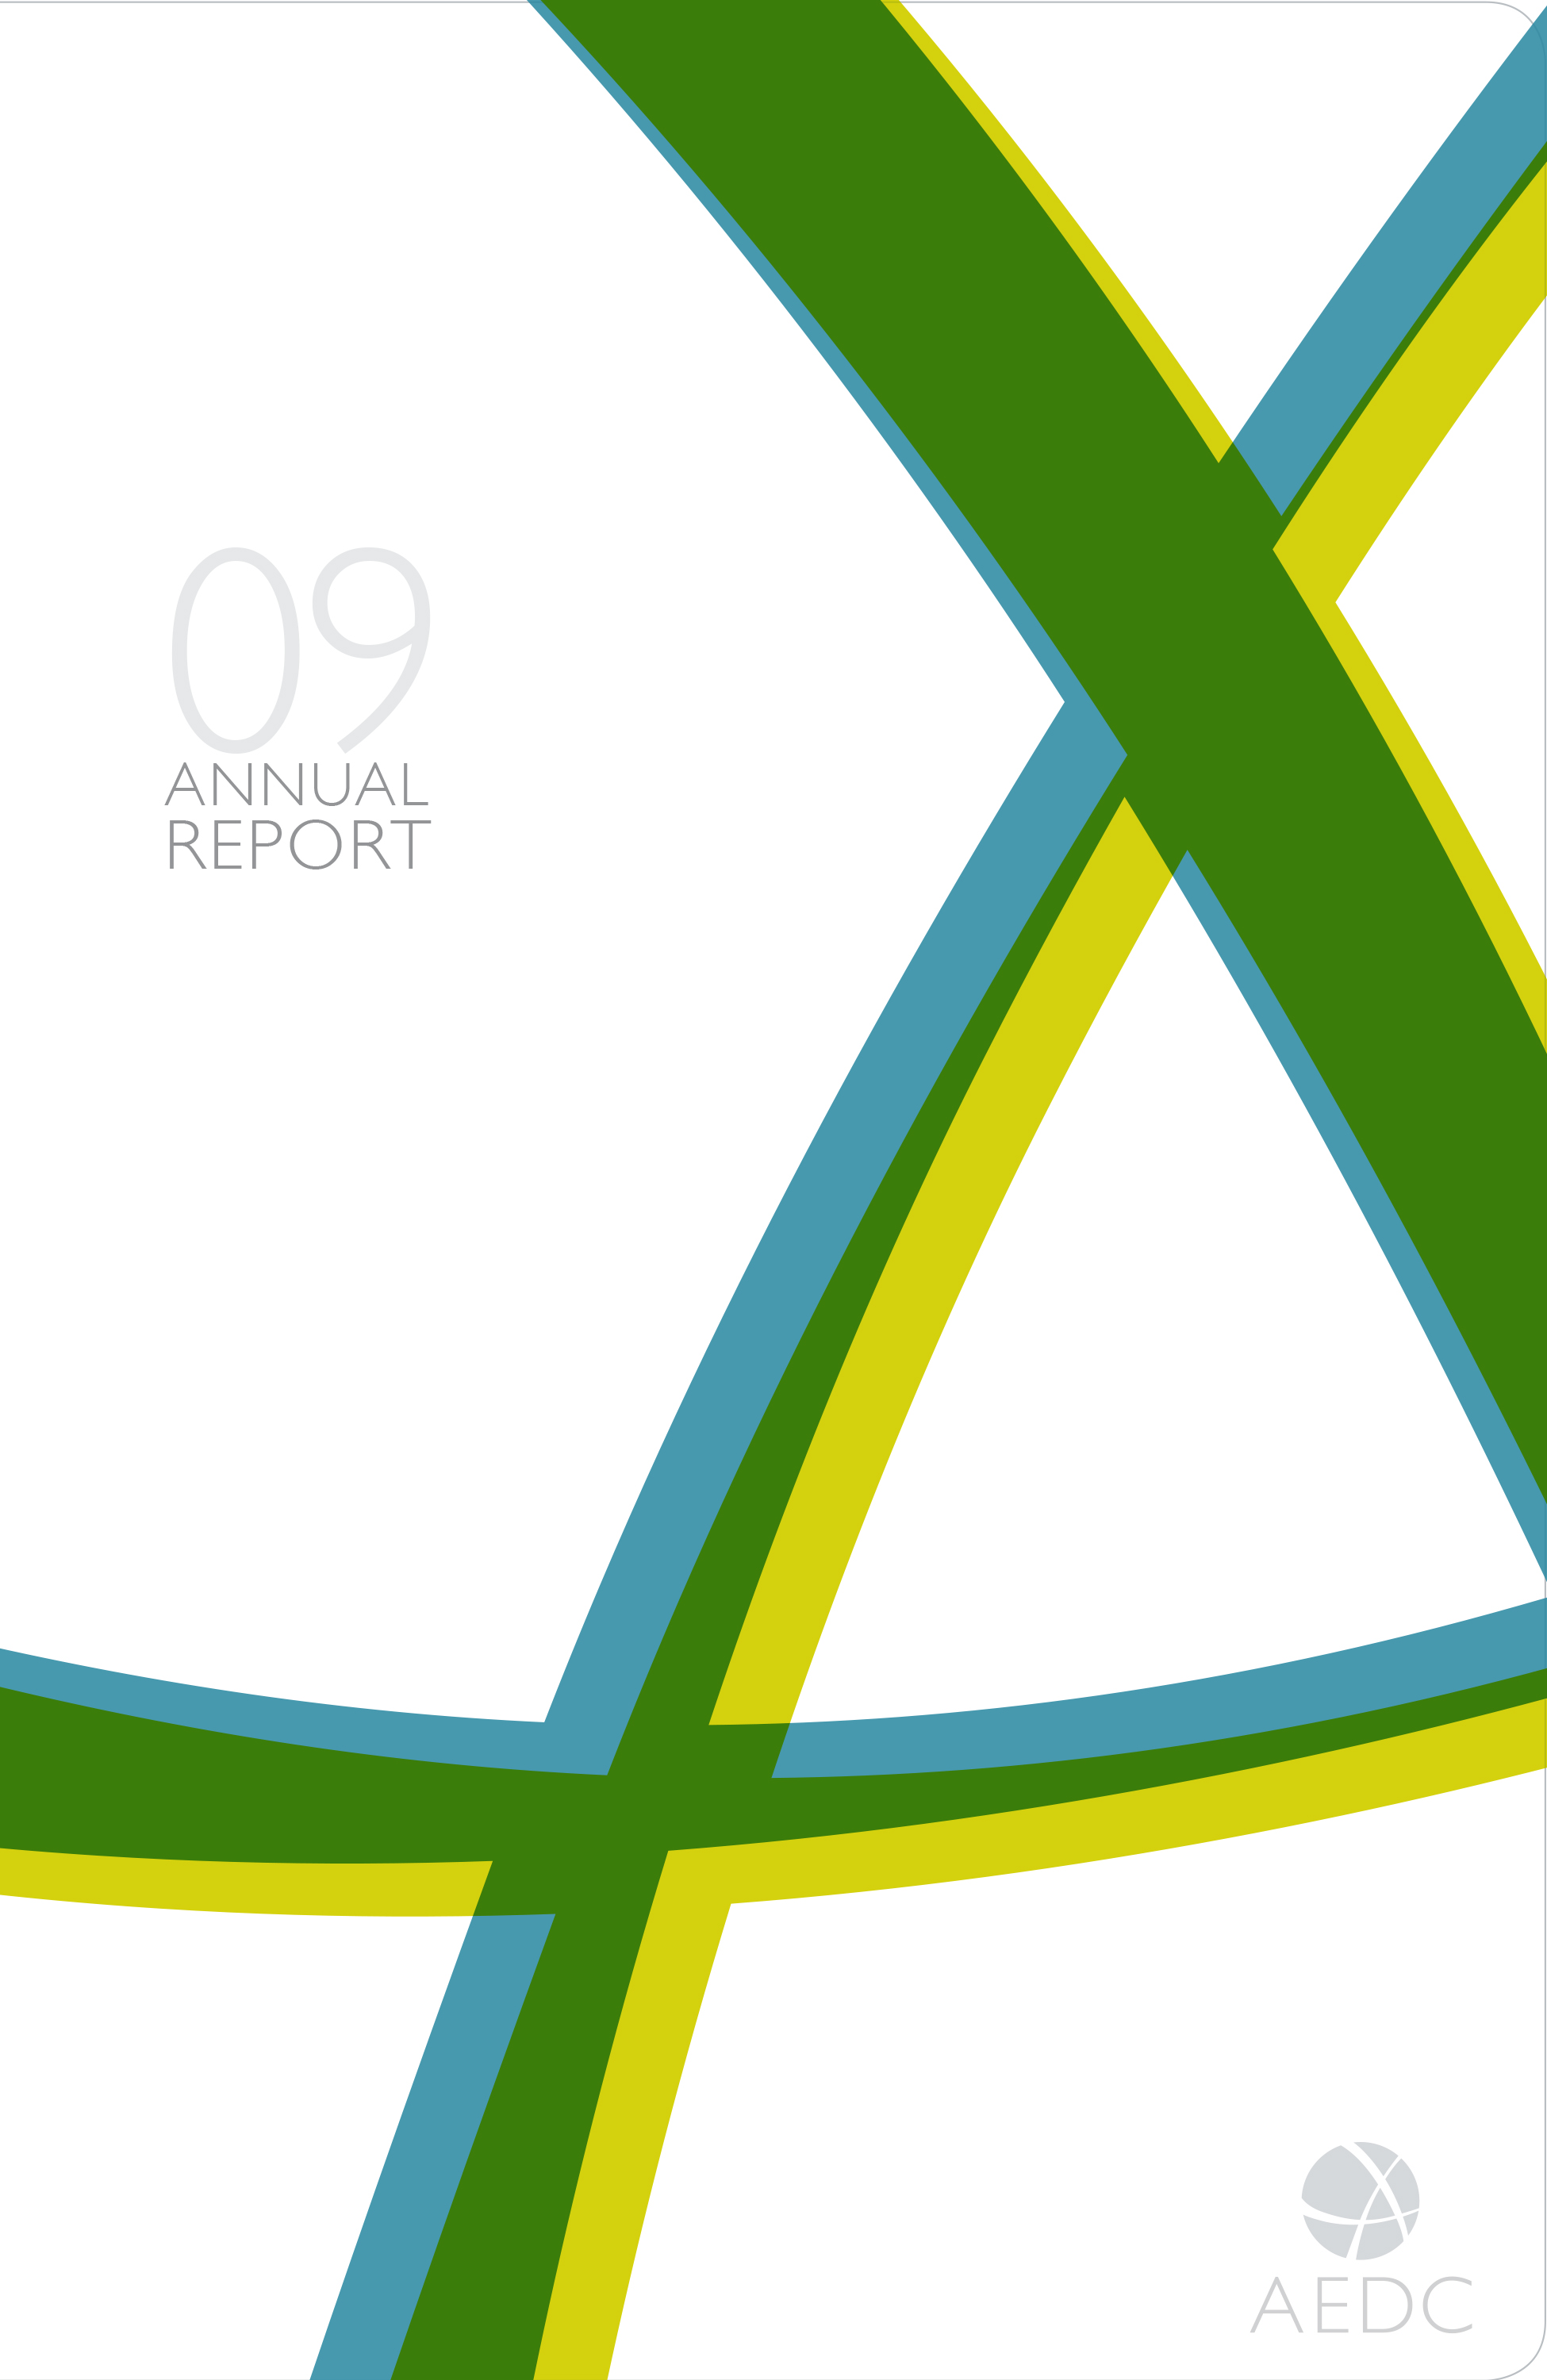 AEDC Annual Report: 2009